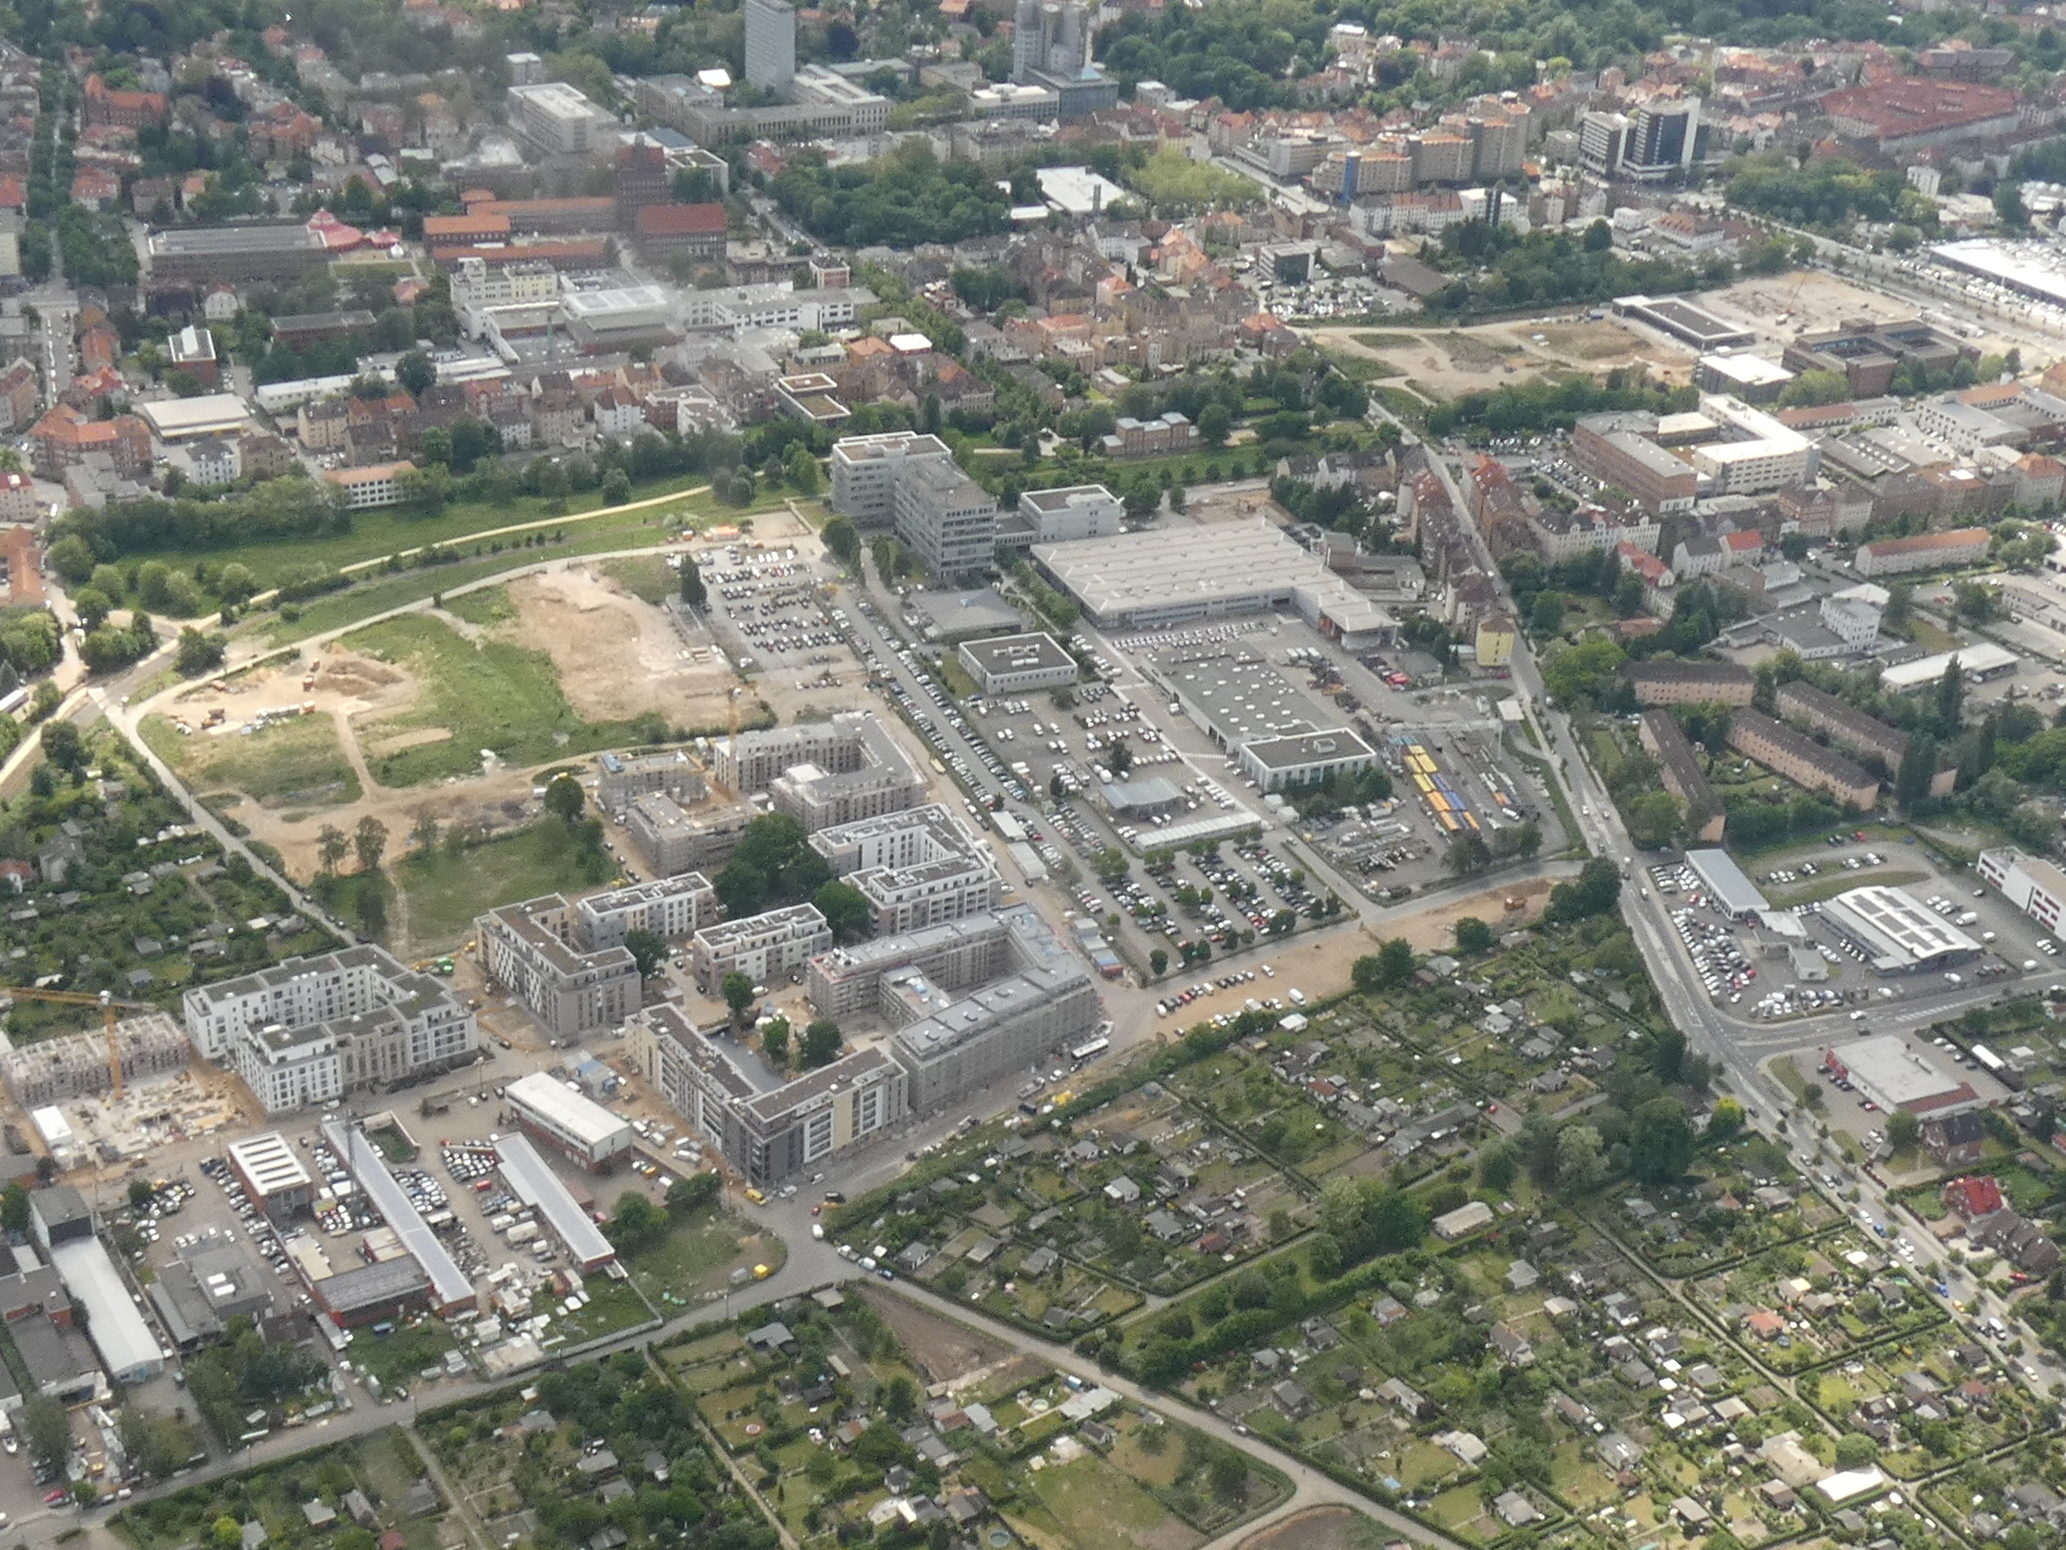 Luftbild Baugebiet Taubenstraße Mai 2019 (Wird bei Klick vergrößert)